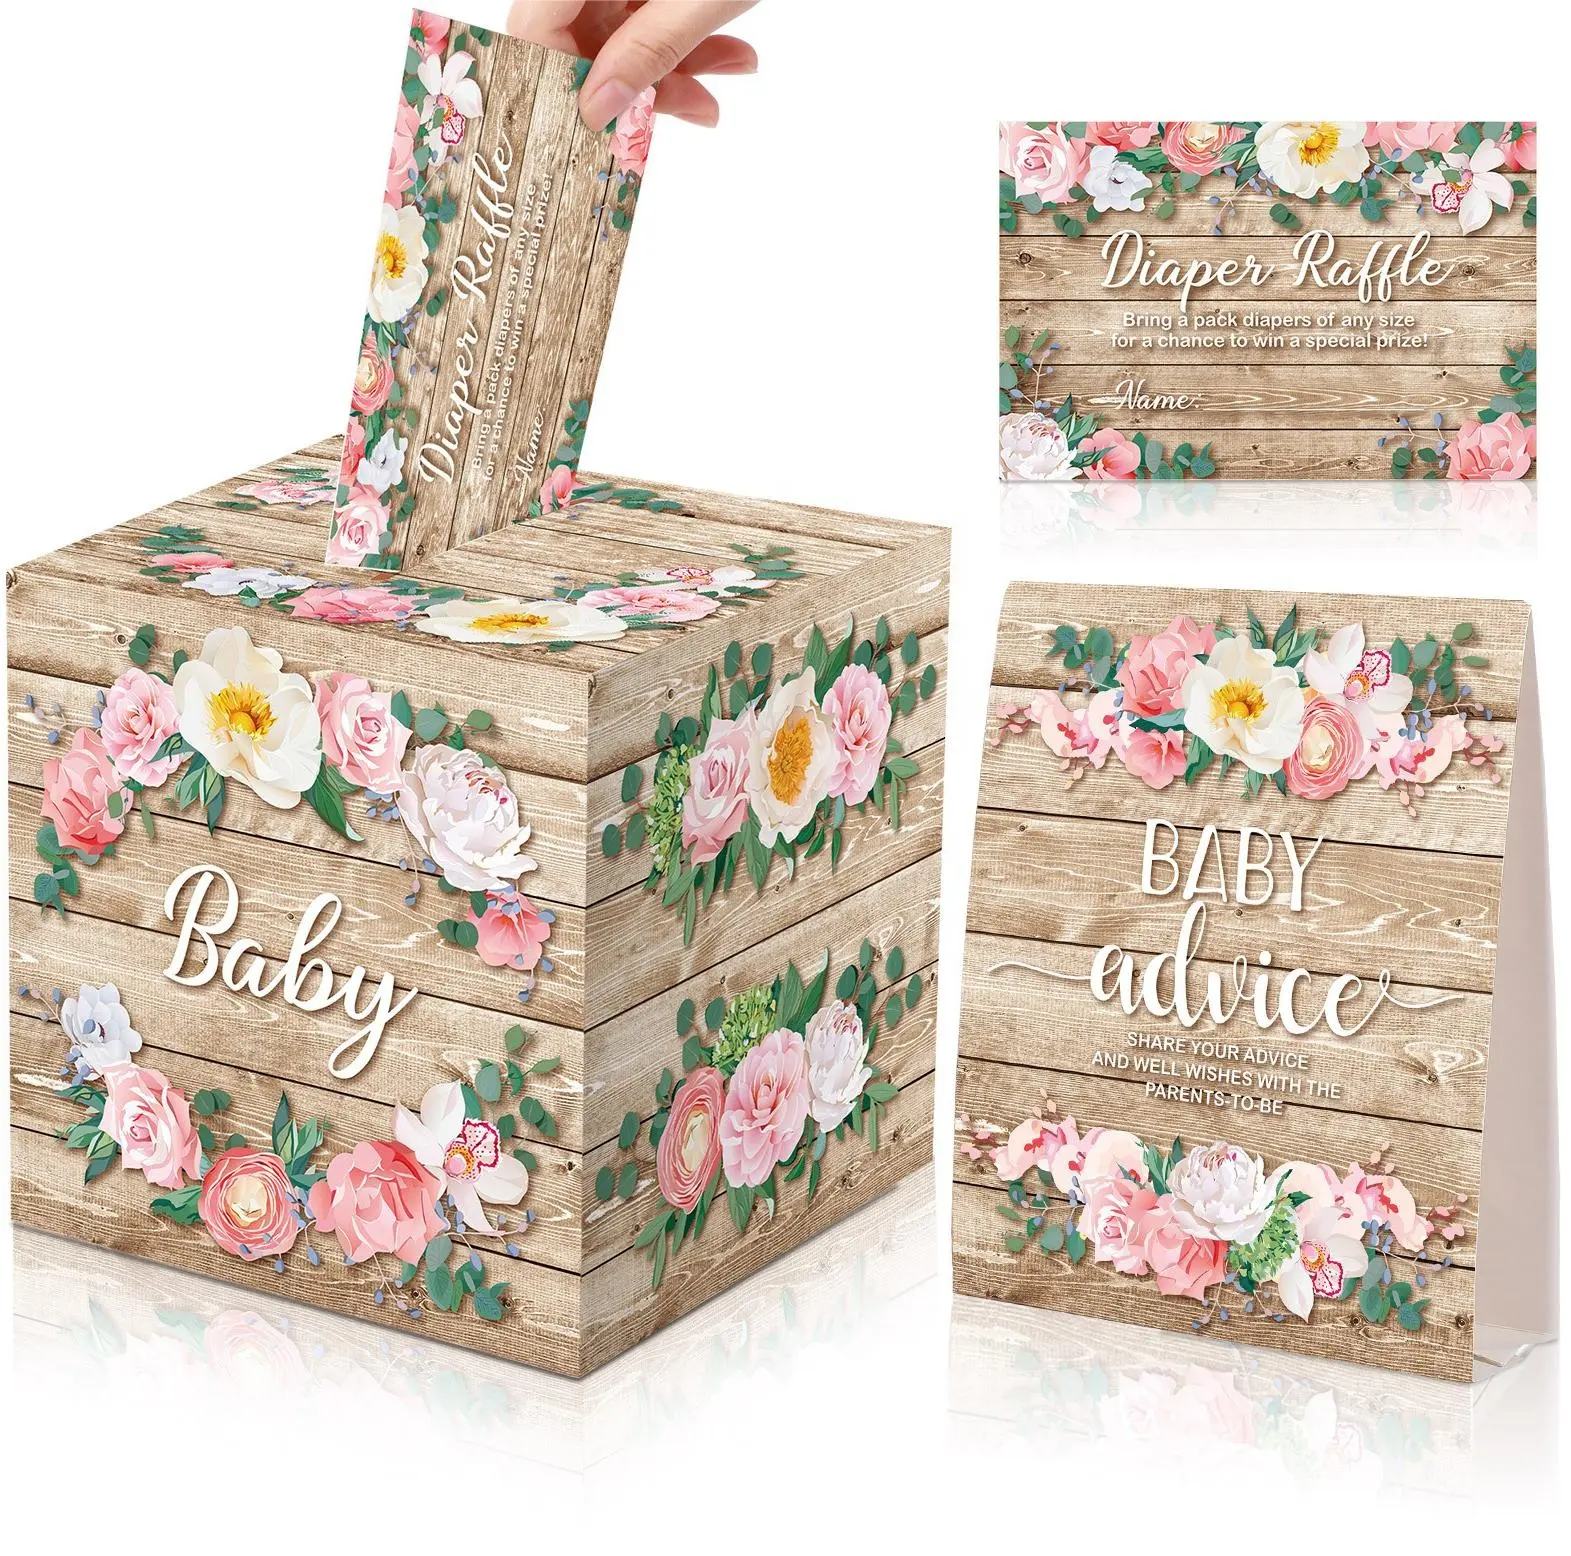 DAMAI floreale Baby Shower tema festa consigli per bambini regalo scatola di fiori Set festa bomboniera con biglietto d'invito